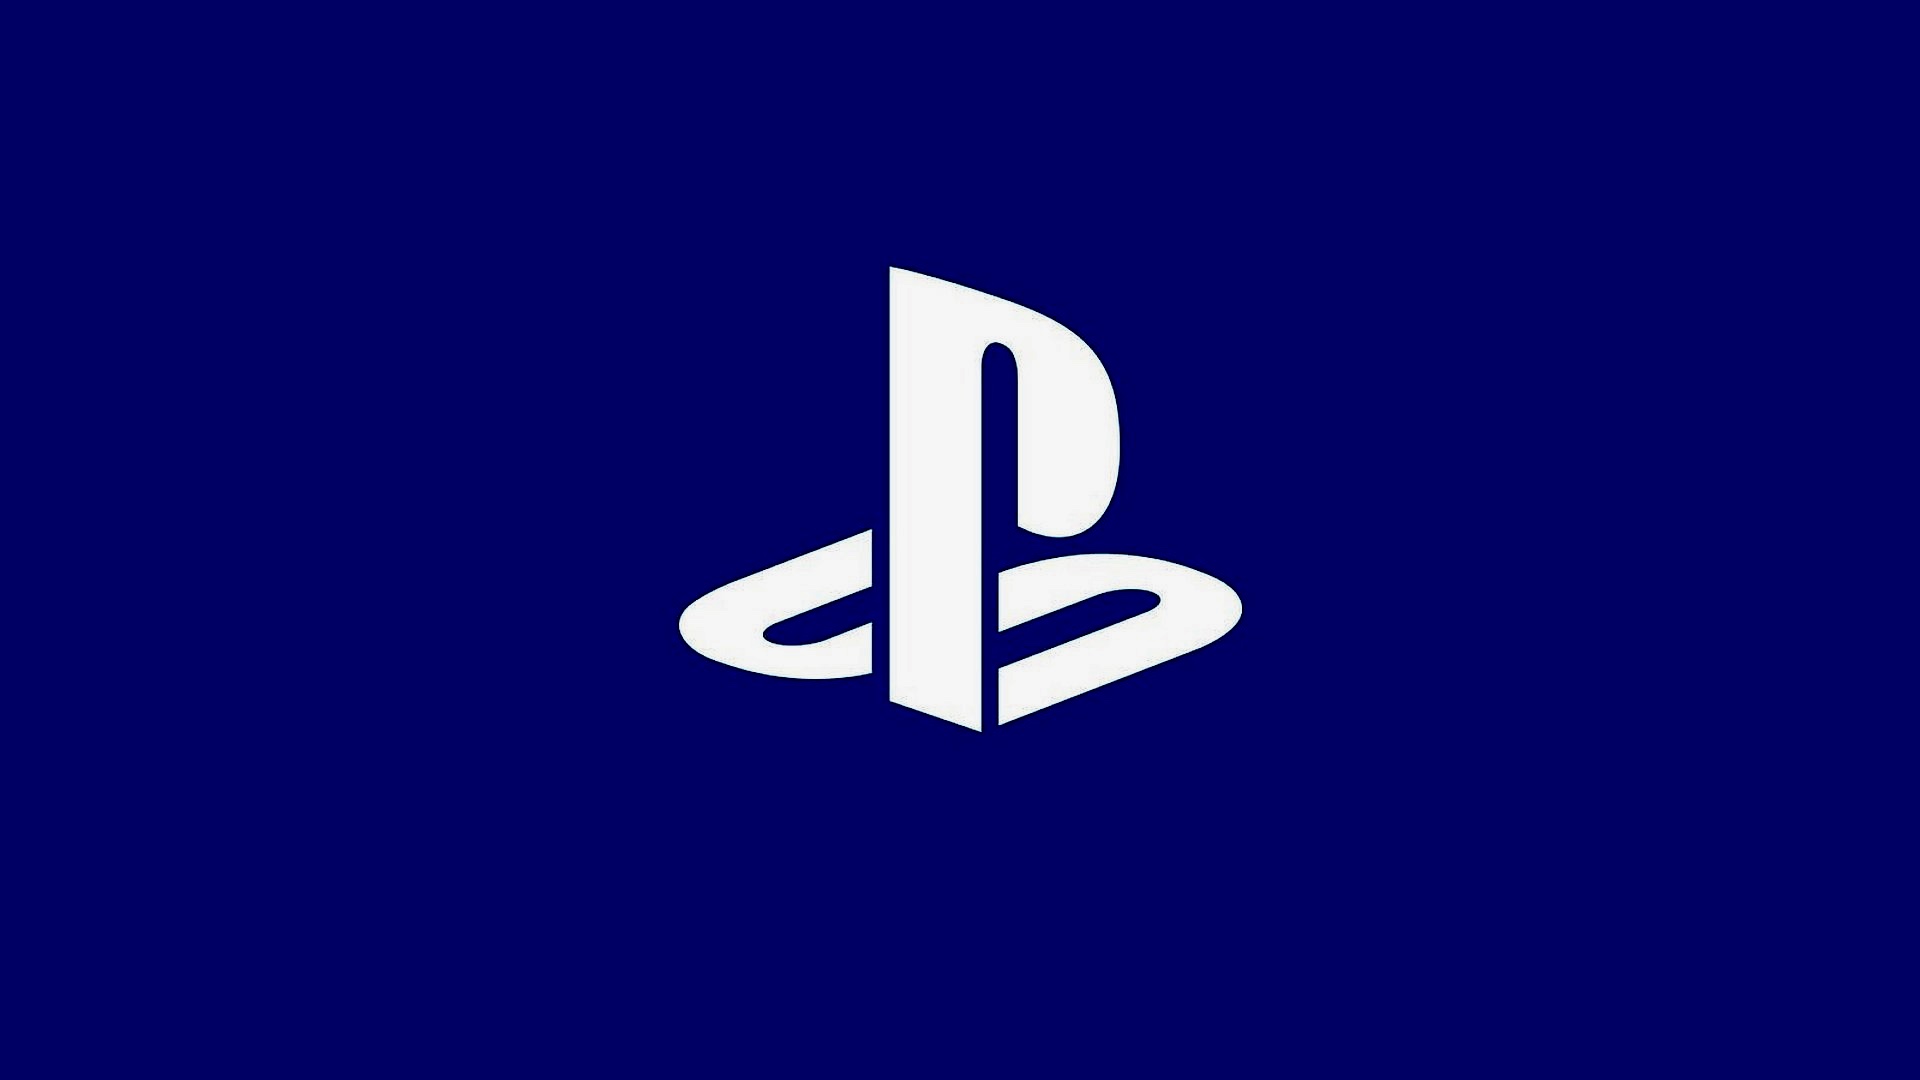 Playstation logotipoa